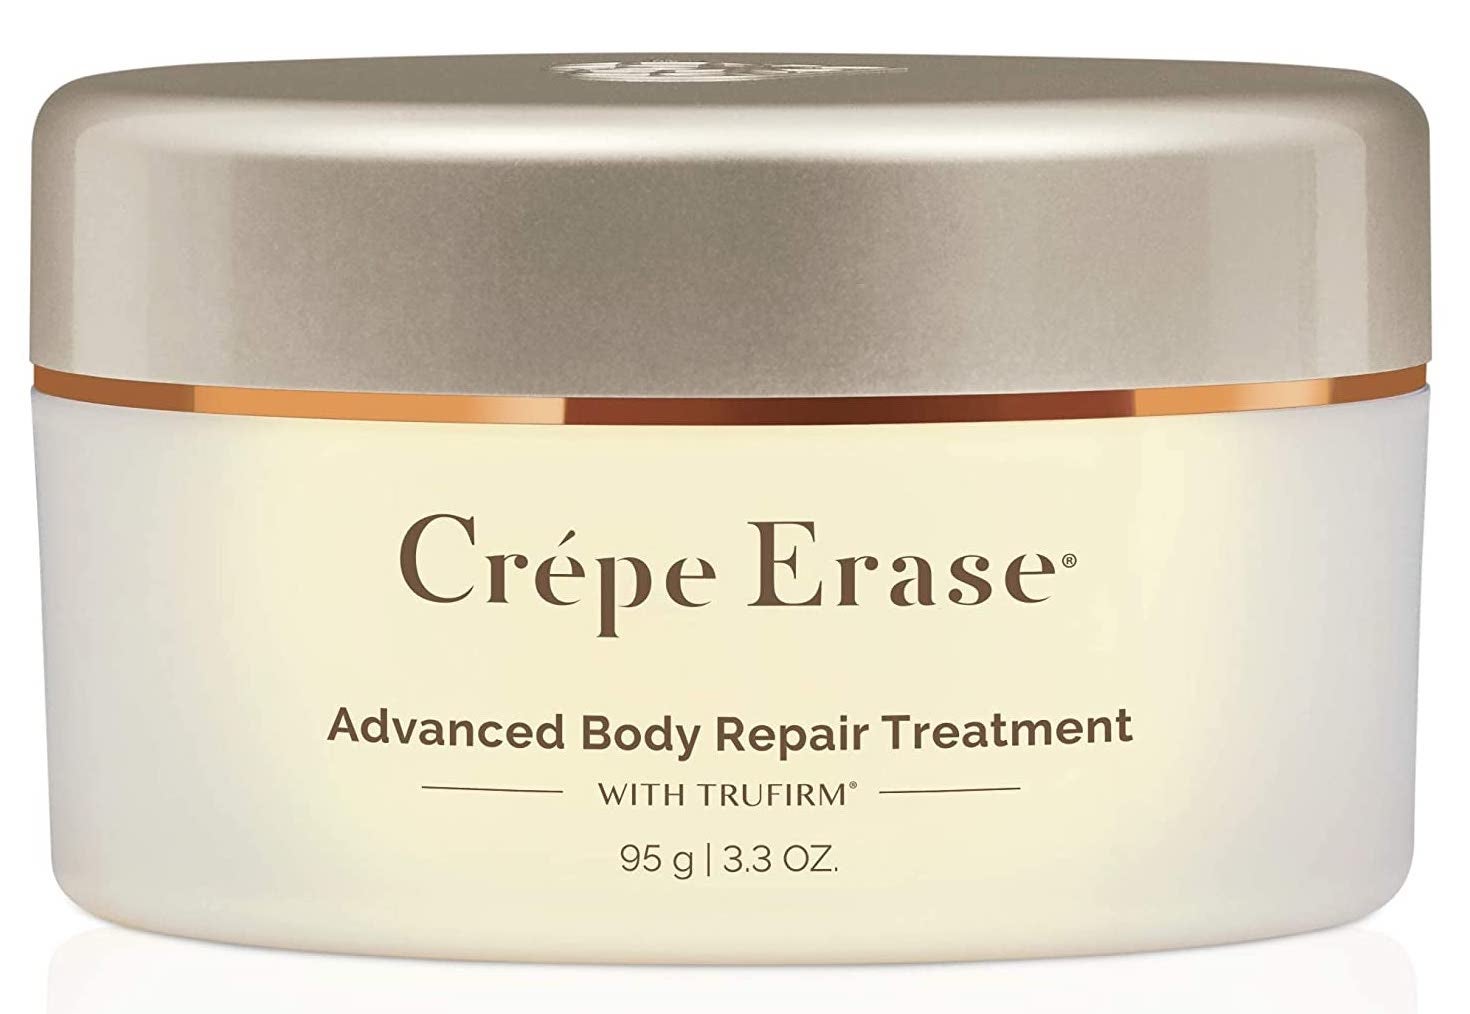 Crepe Erase Intensive Body Repair Treatment